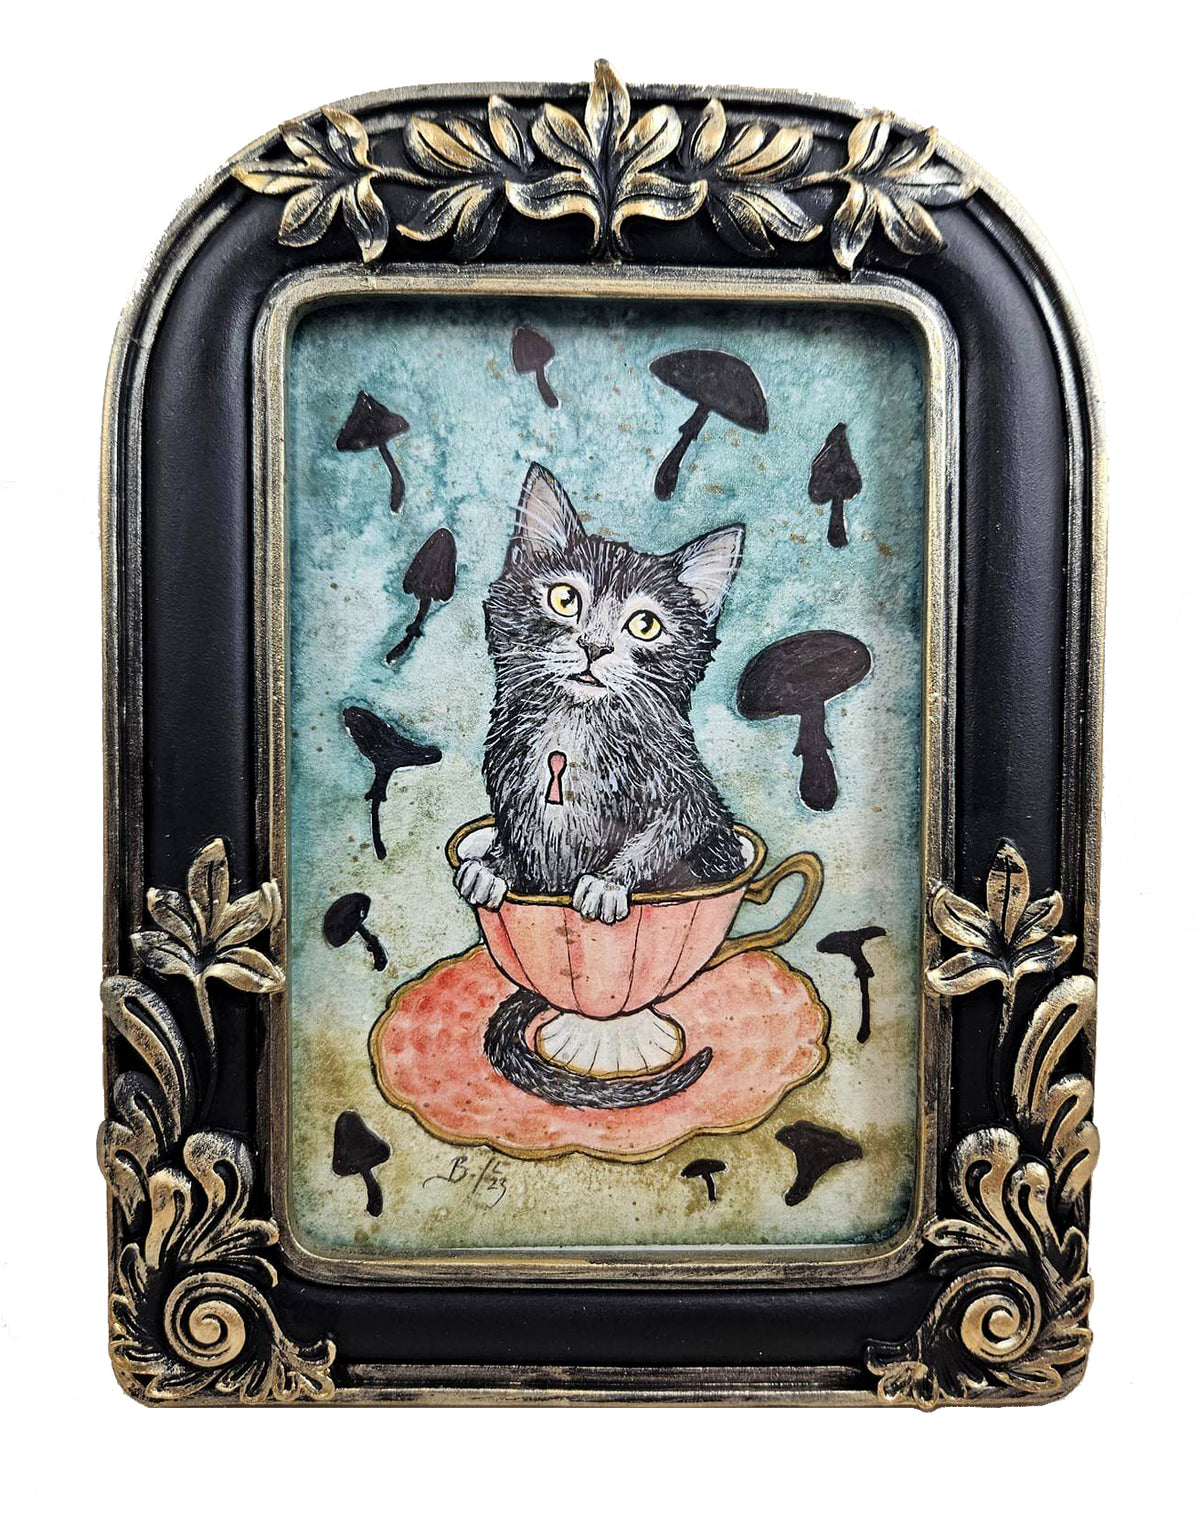 Original Art- Teacup Kitten: Matcha with Mushrooms